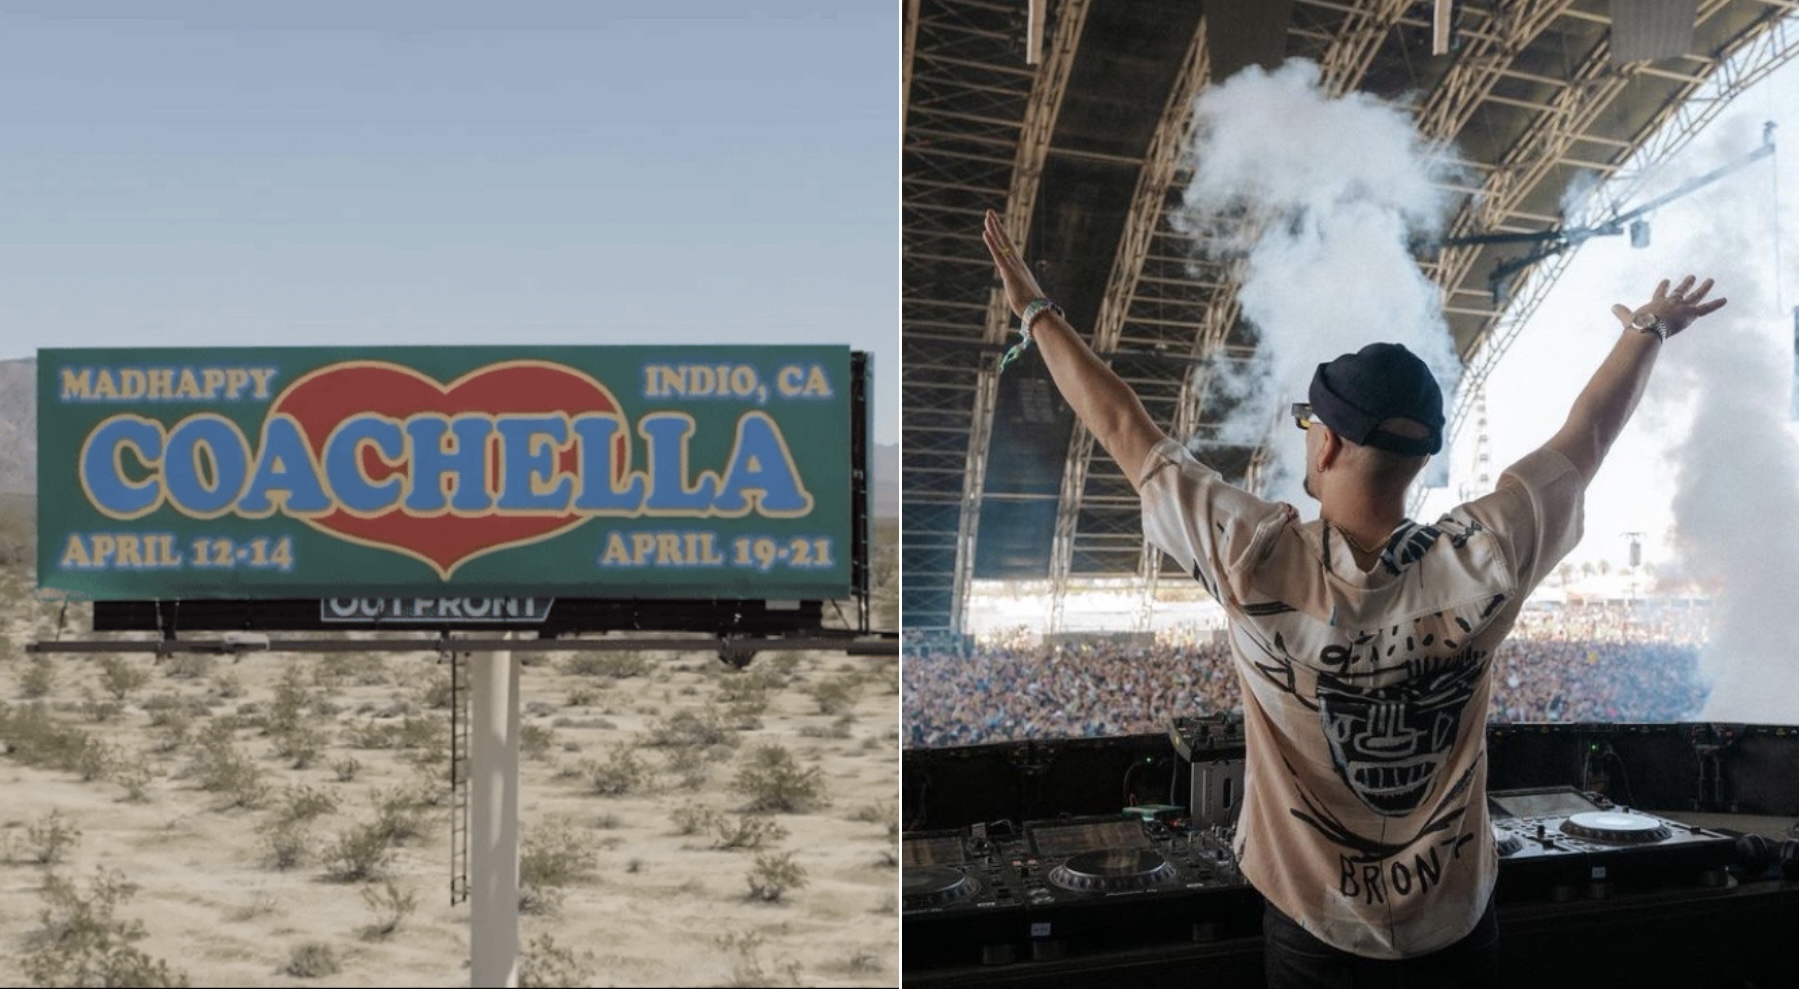 Coachella bo dopolnila 25 let! Kakšna presenečenja nas čakajo na letošnjem festivalu